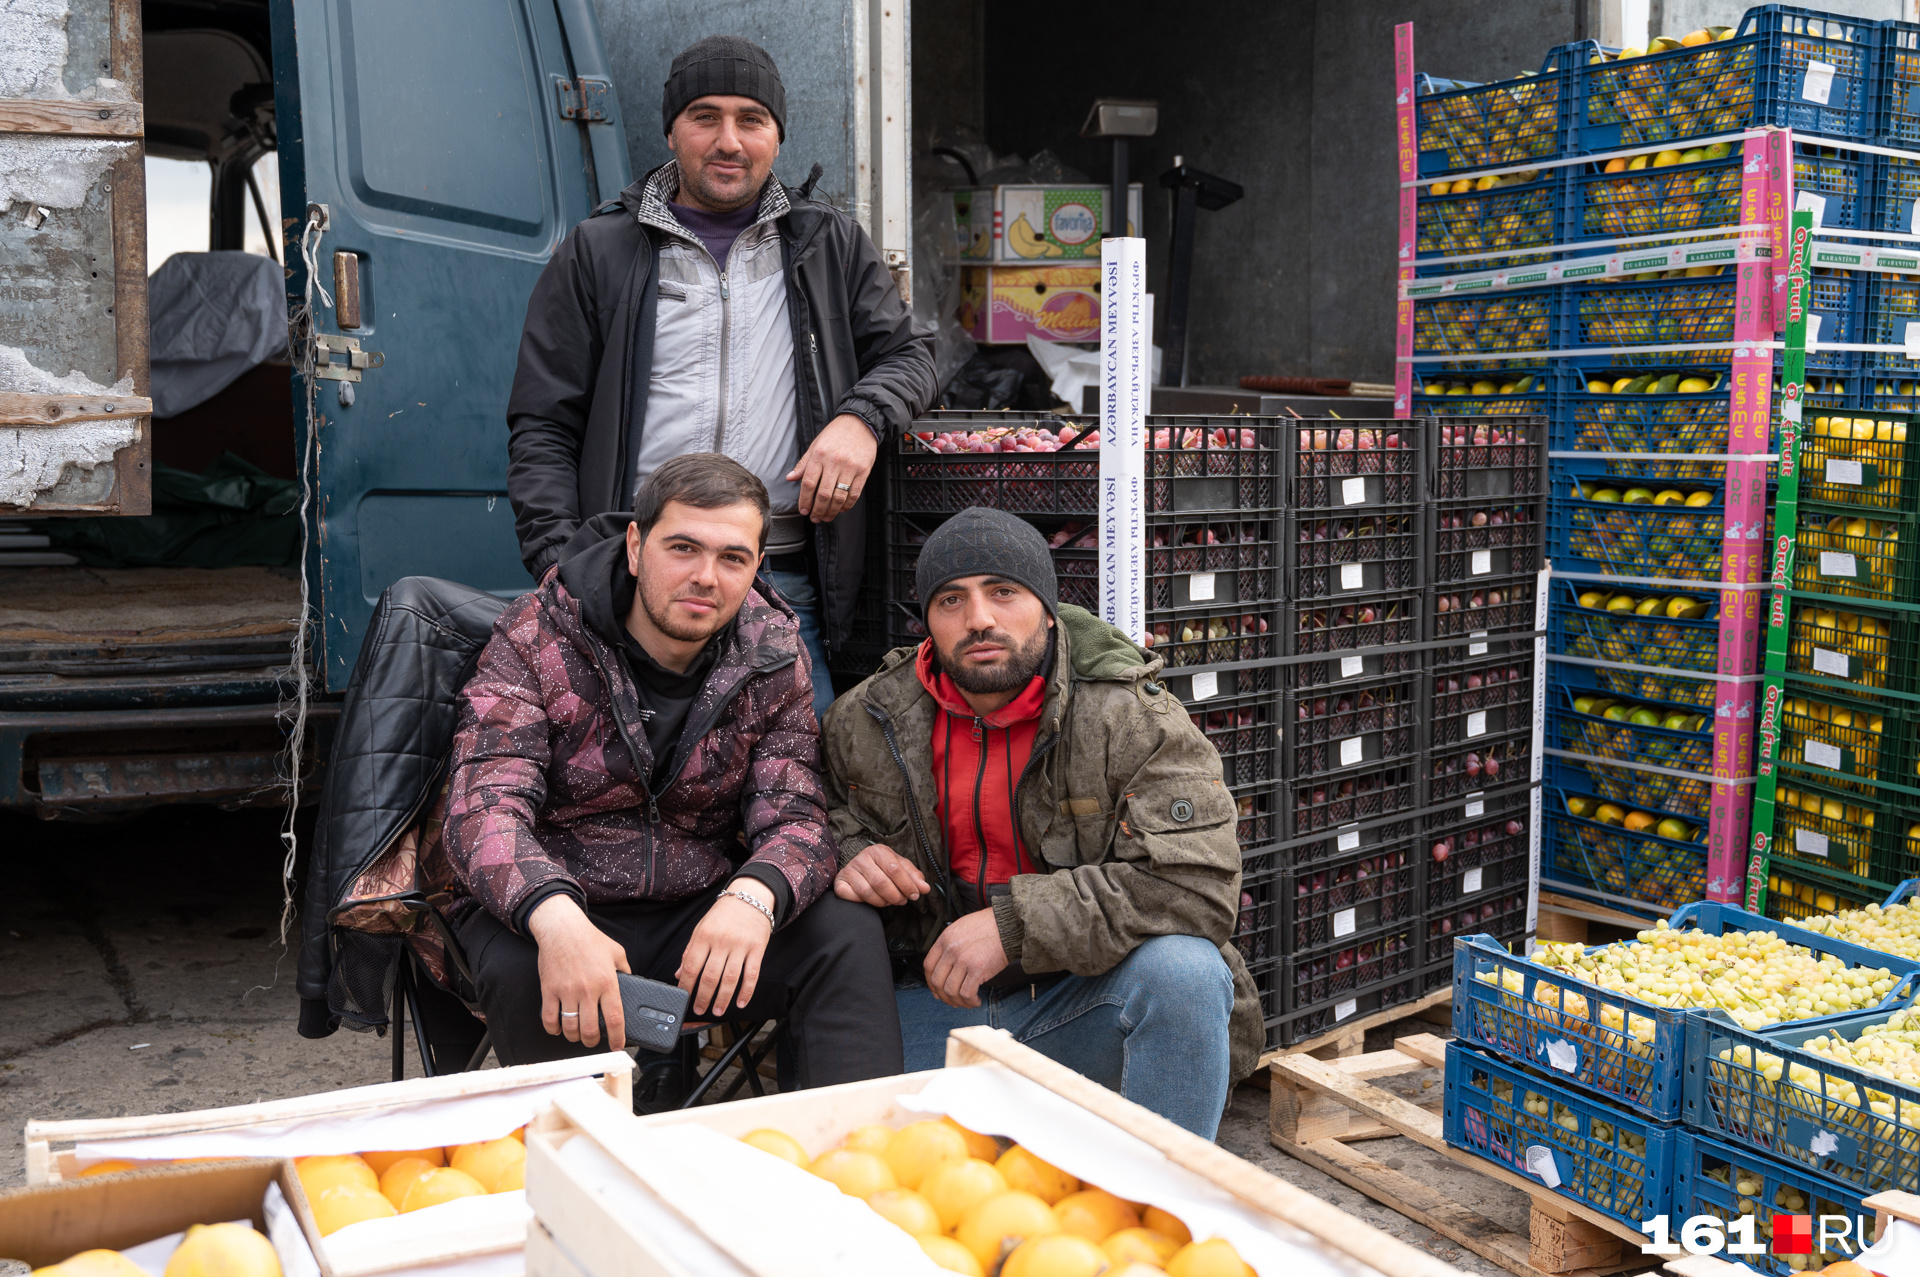 Некоторые продавцы овощного говорят, что перевоз контейнера с товаром может стоить 100 тысяч рублей